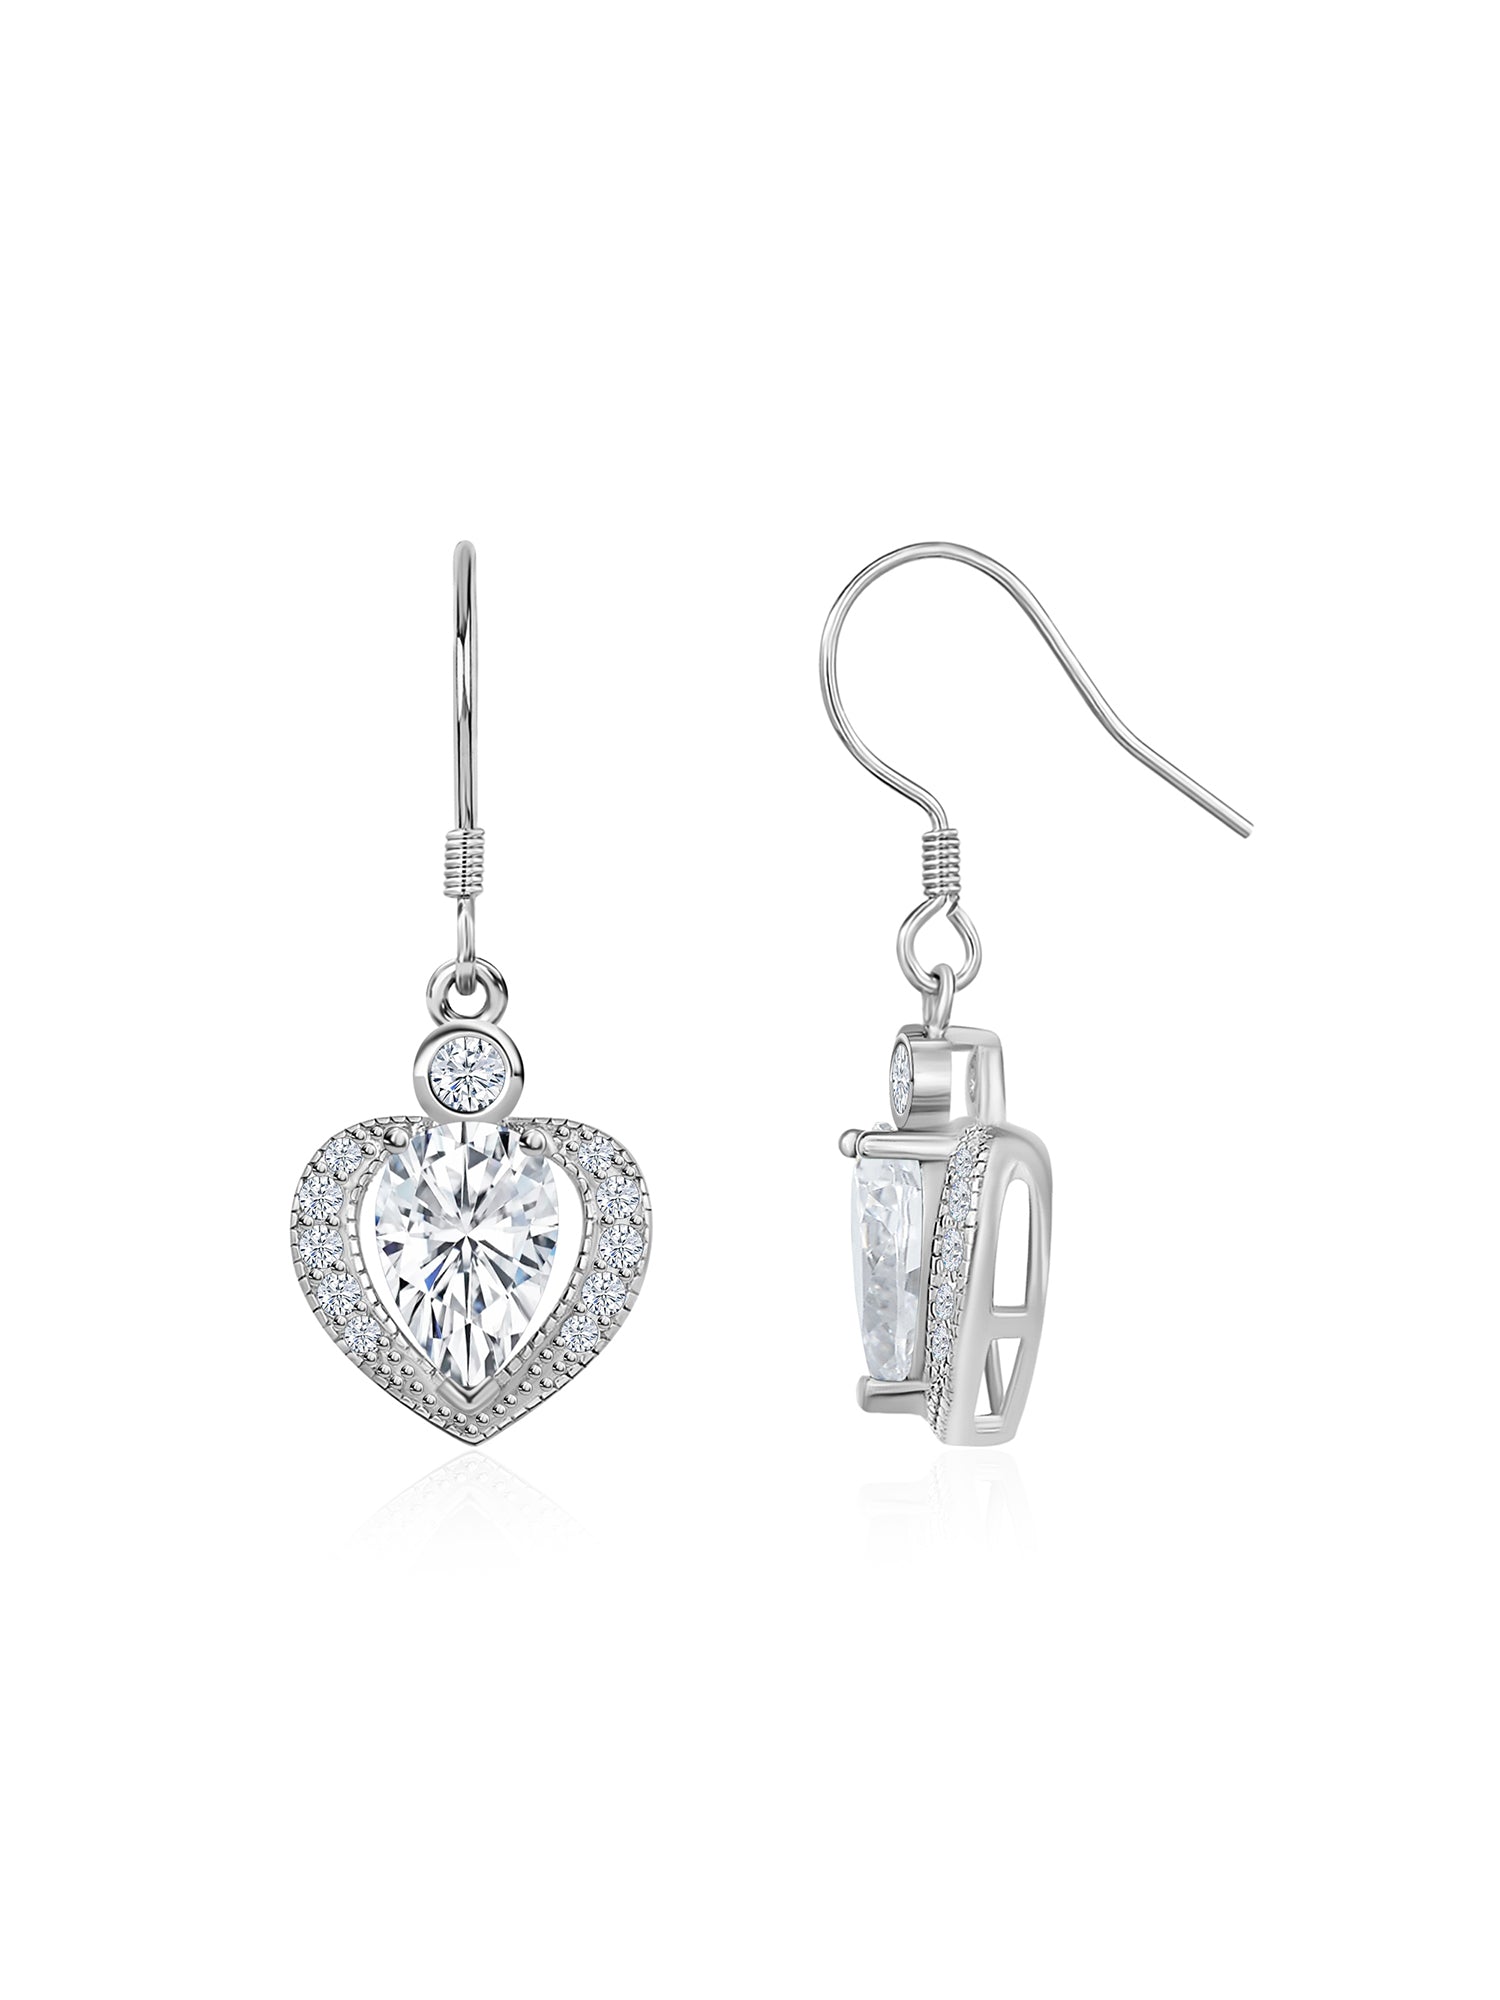 Heart Shaped American Diamond 925 Silver Dangle Earrings For Women-12